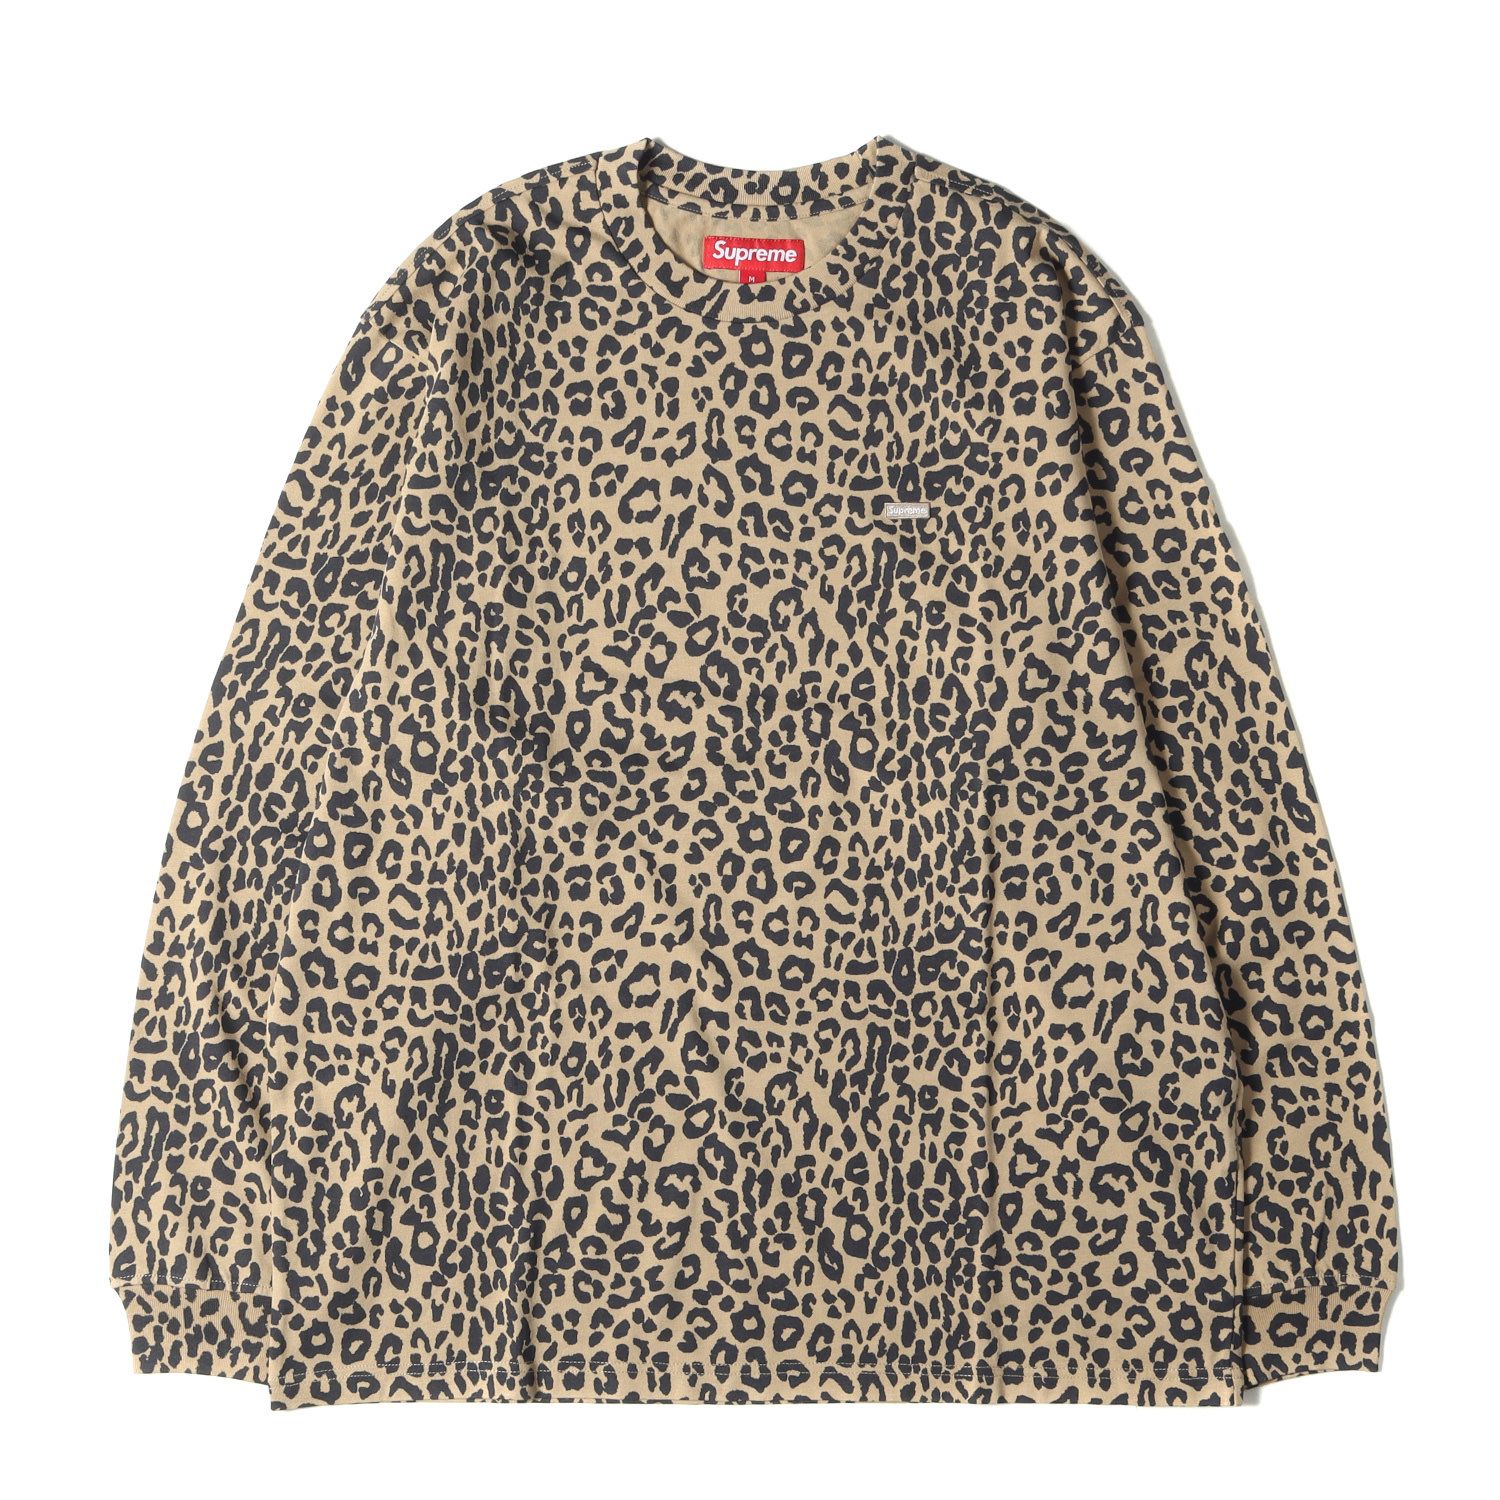 新品 Supreme シュプリーム Tシャツ サイズ:M 23AW スモール ボックスロゴ ロングスリーブTシャツ Small Box L/S Tee  Leopard / トップス 長袖 カットソー 総柄 レオパード 【メンズ】 - メルカリ